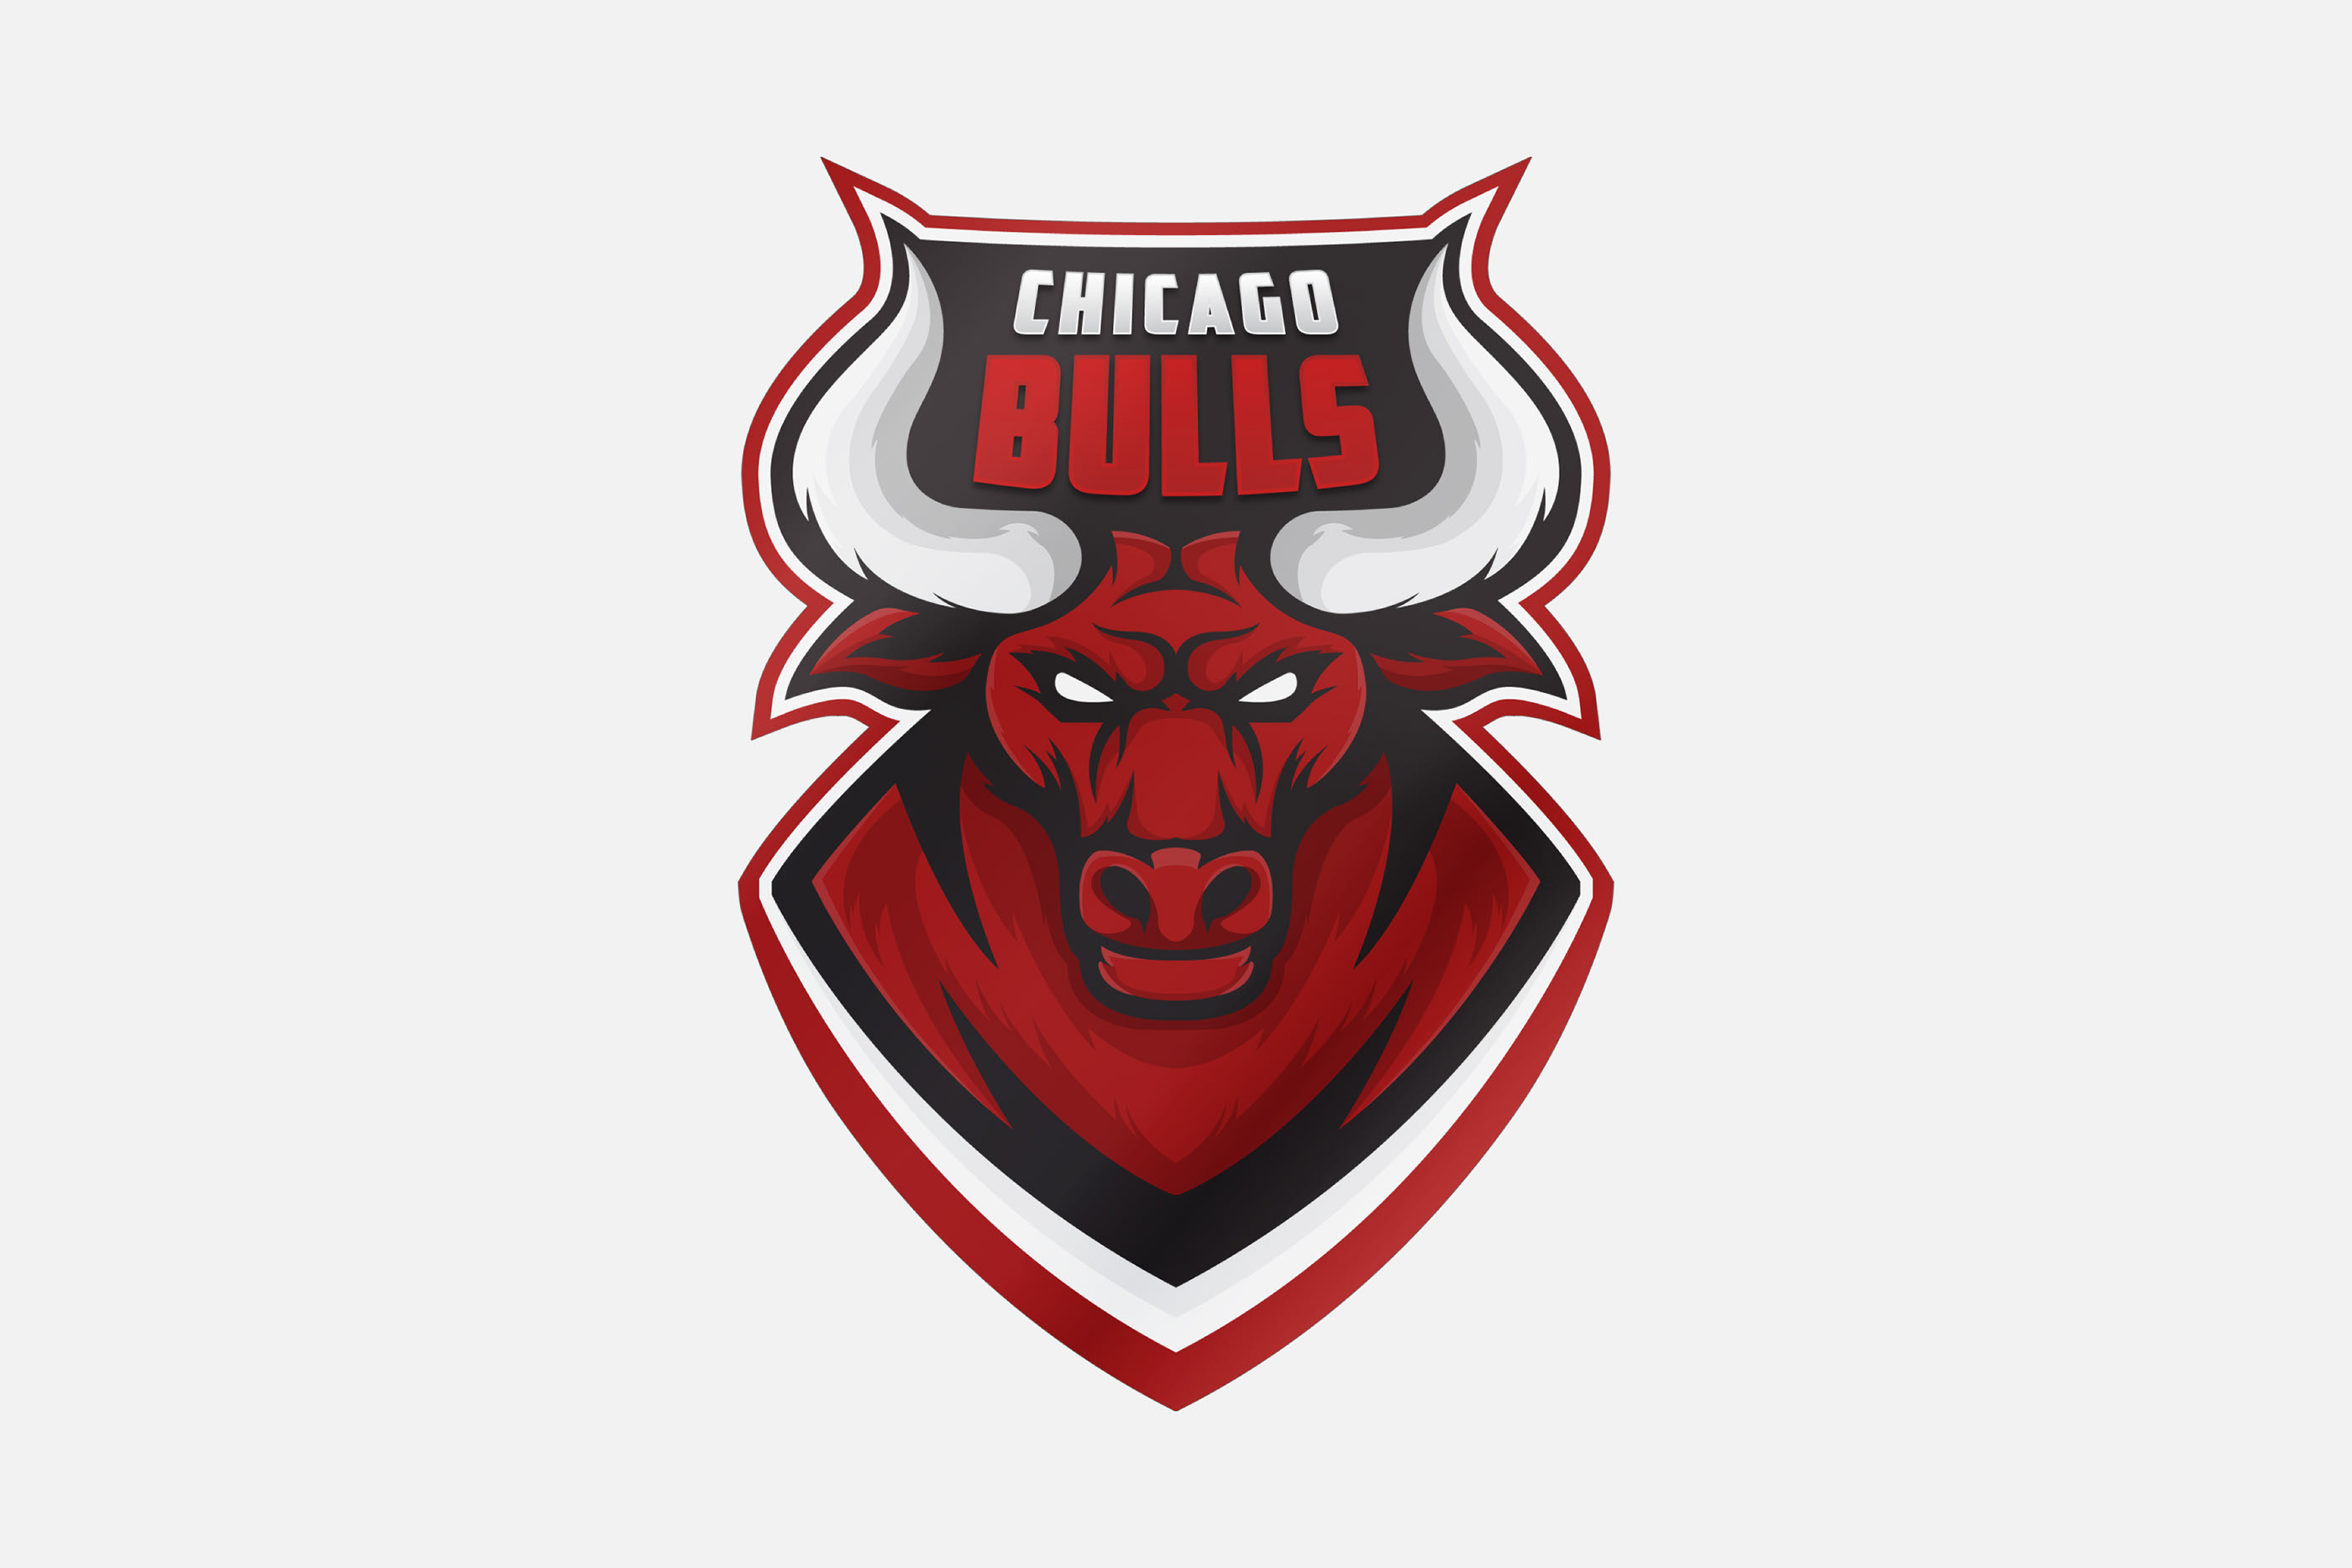 Chicago Bulls scores